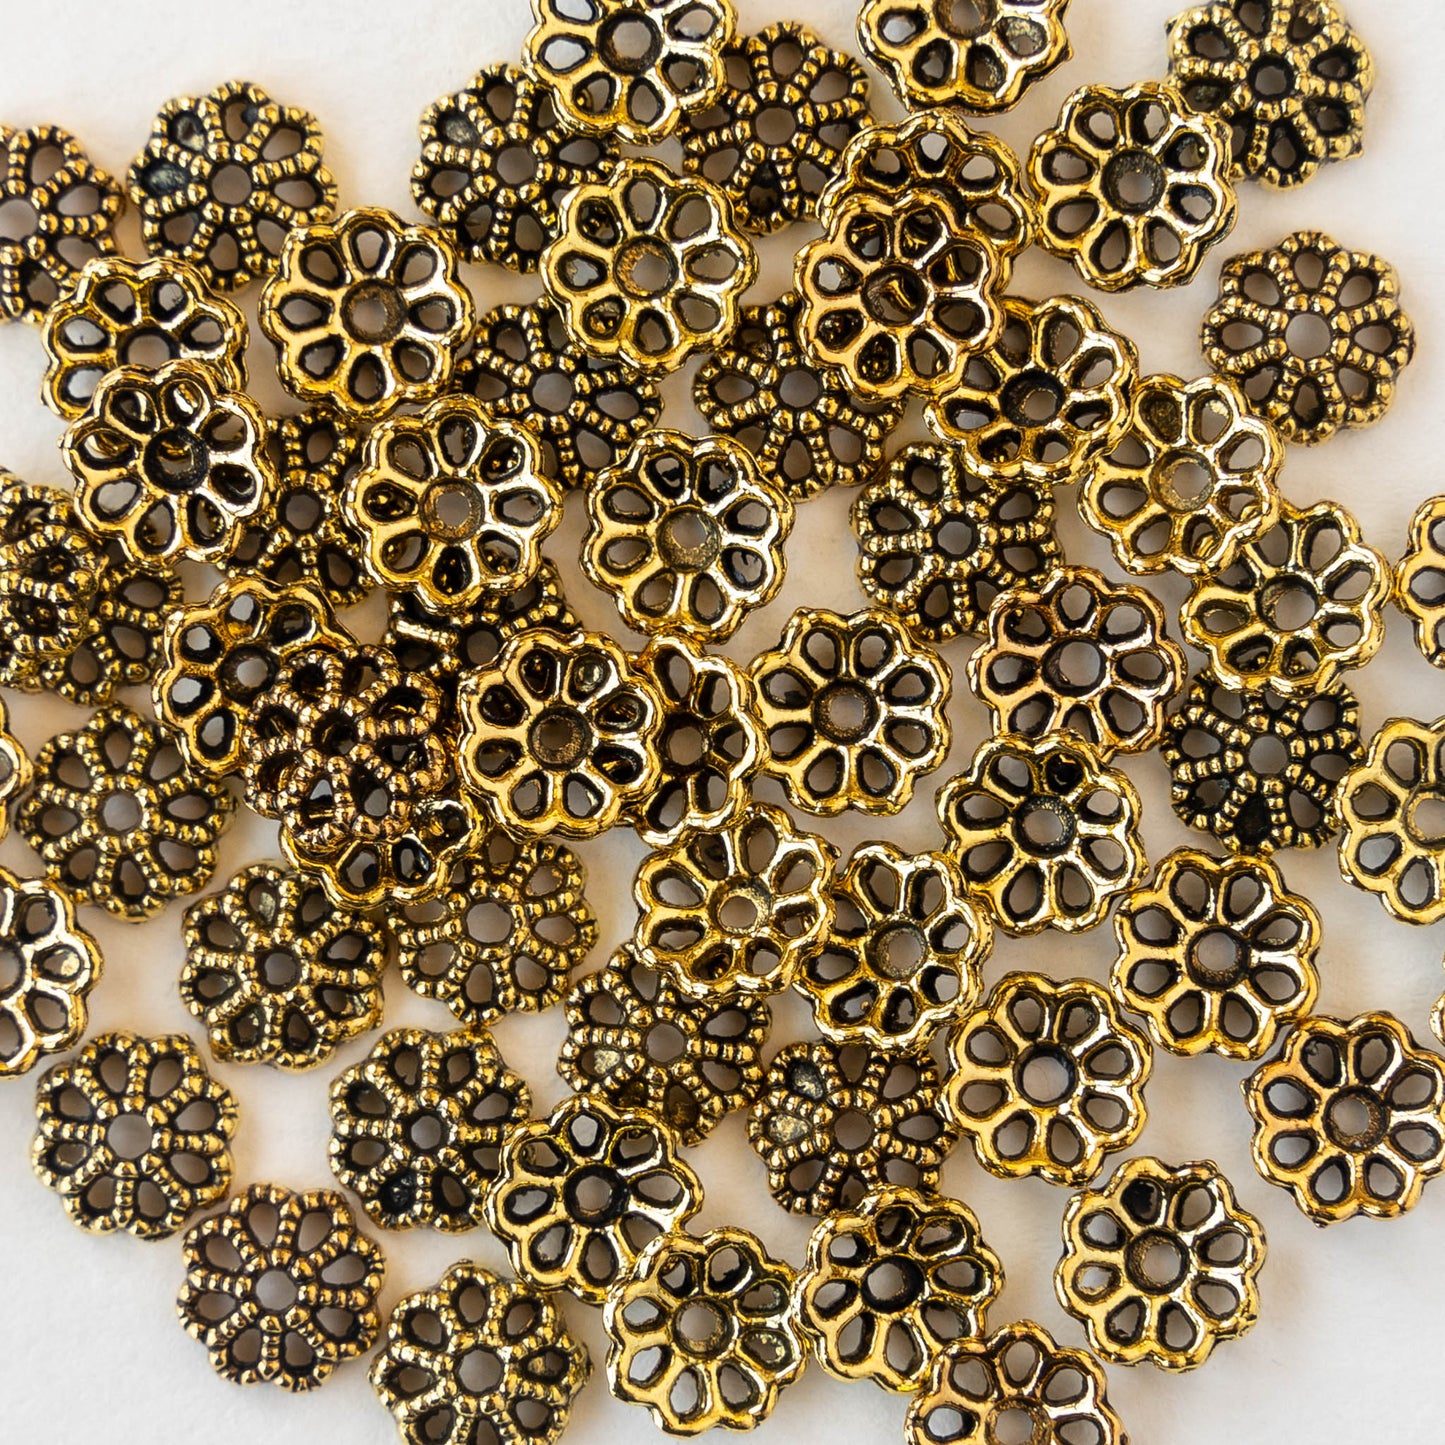 8mm Metal Flower Bead Caps - 30 Pieces